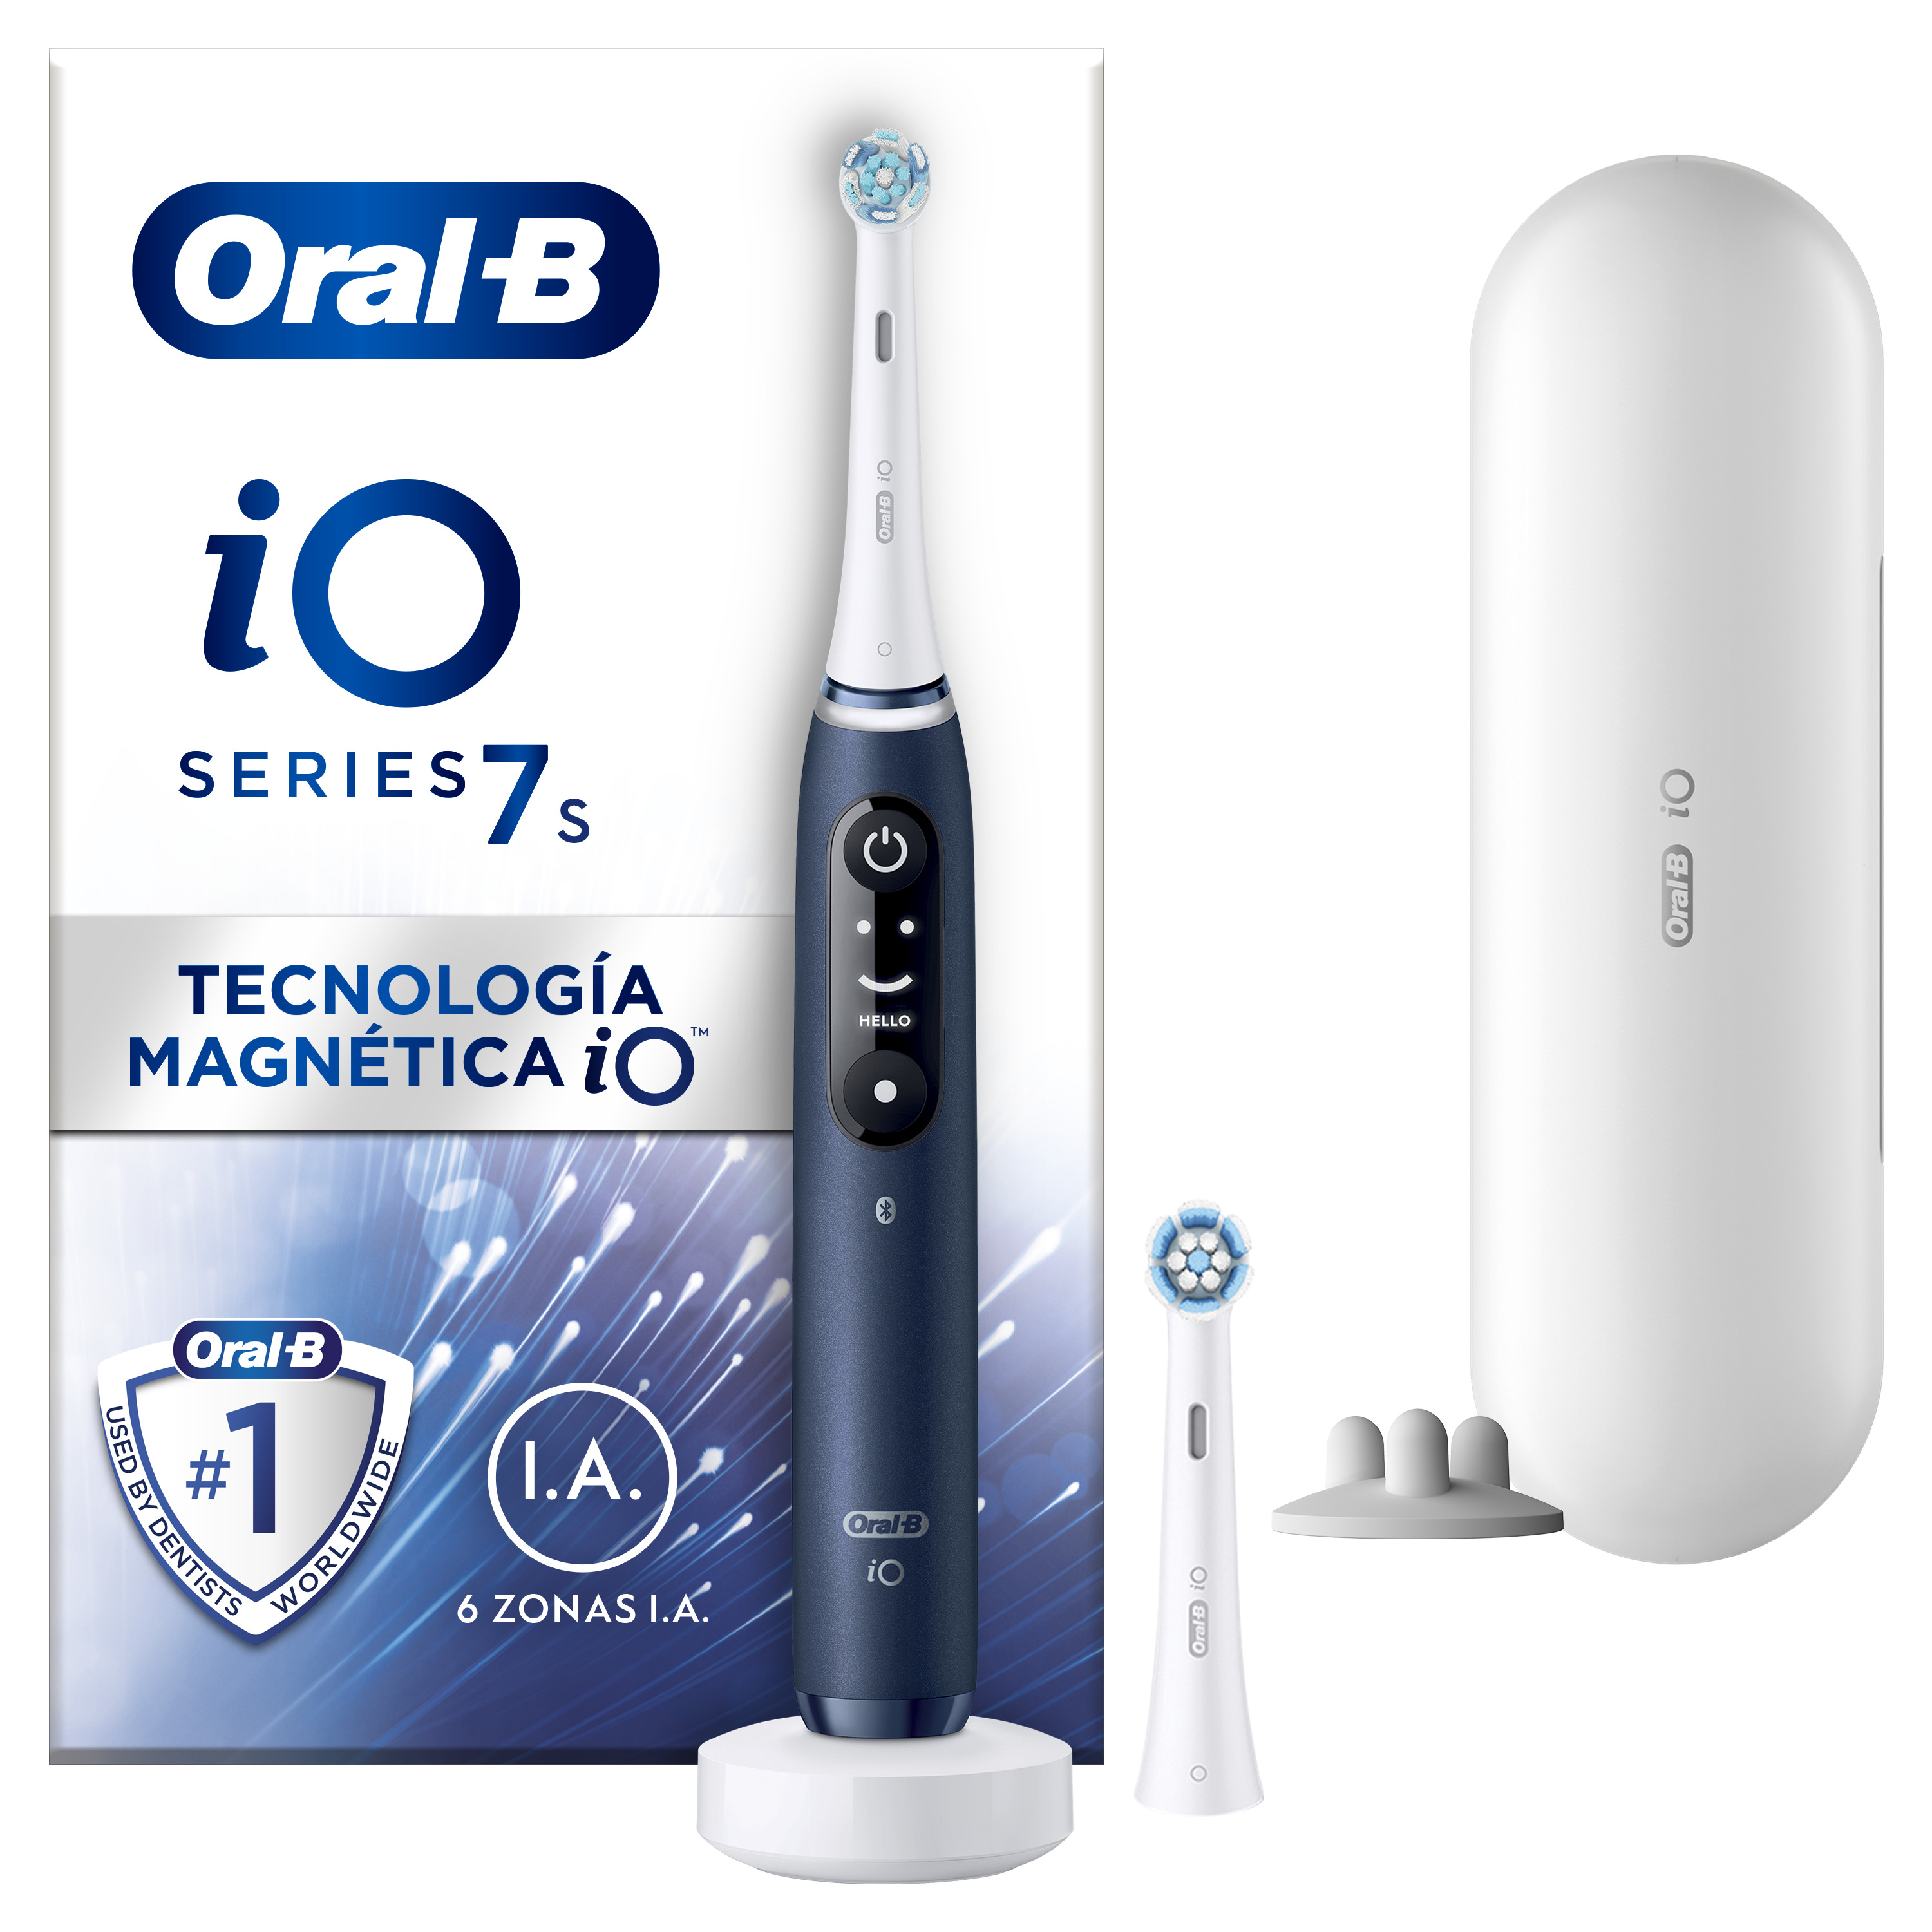 Oral-B - Oral-B iO 7S cepillo eléctrico azul con 2 cabezales y 1 estuche de viaje diseñado por Braun